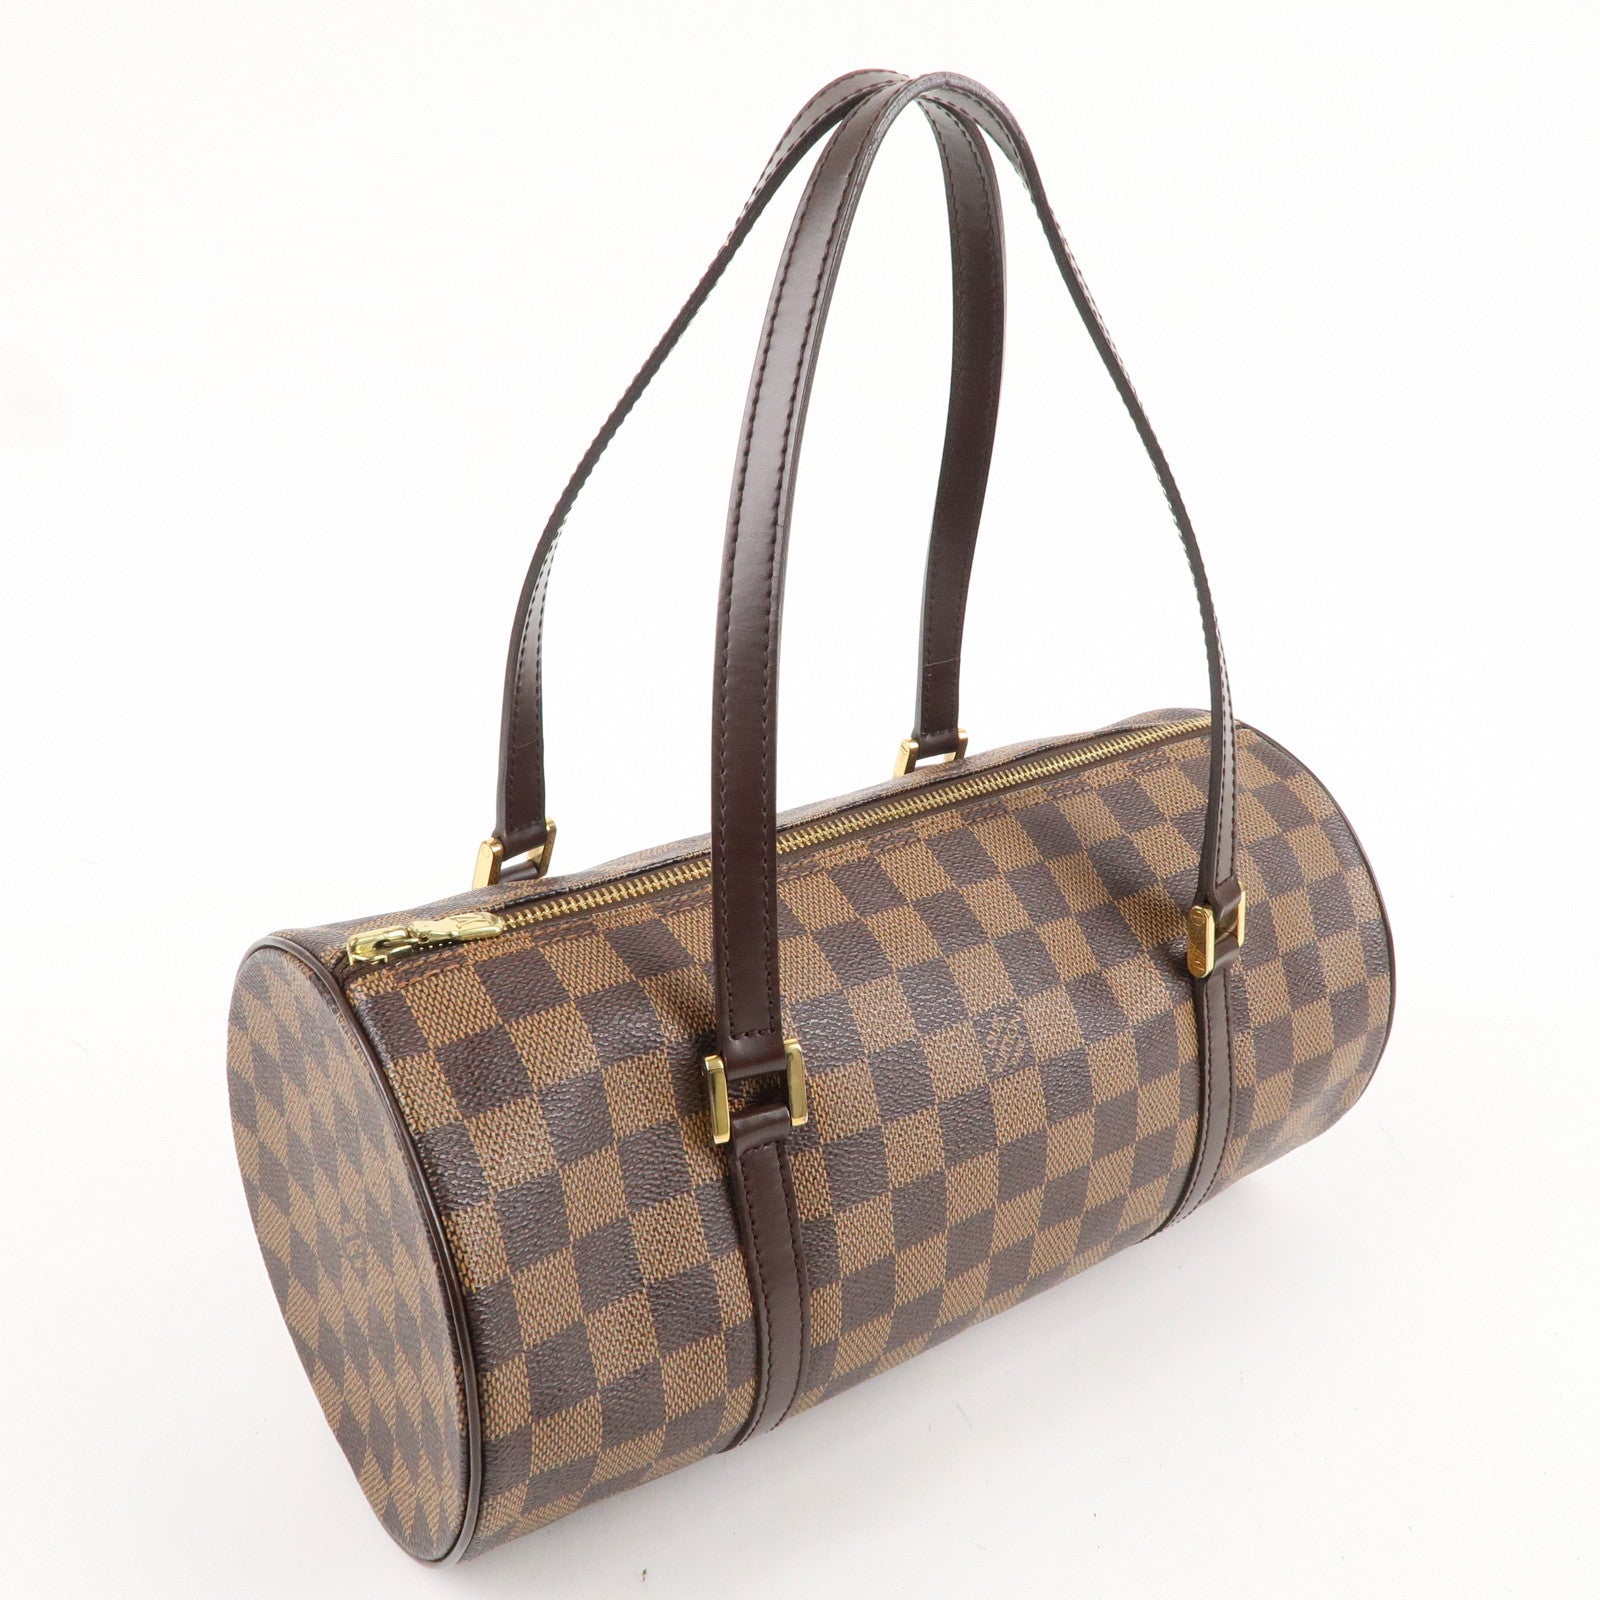 Louis Vuitton Papillon 30 N51303 Handbag Damier Ebene / With